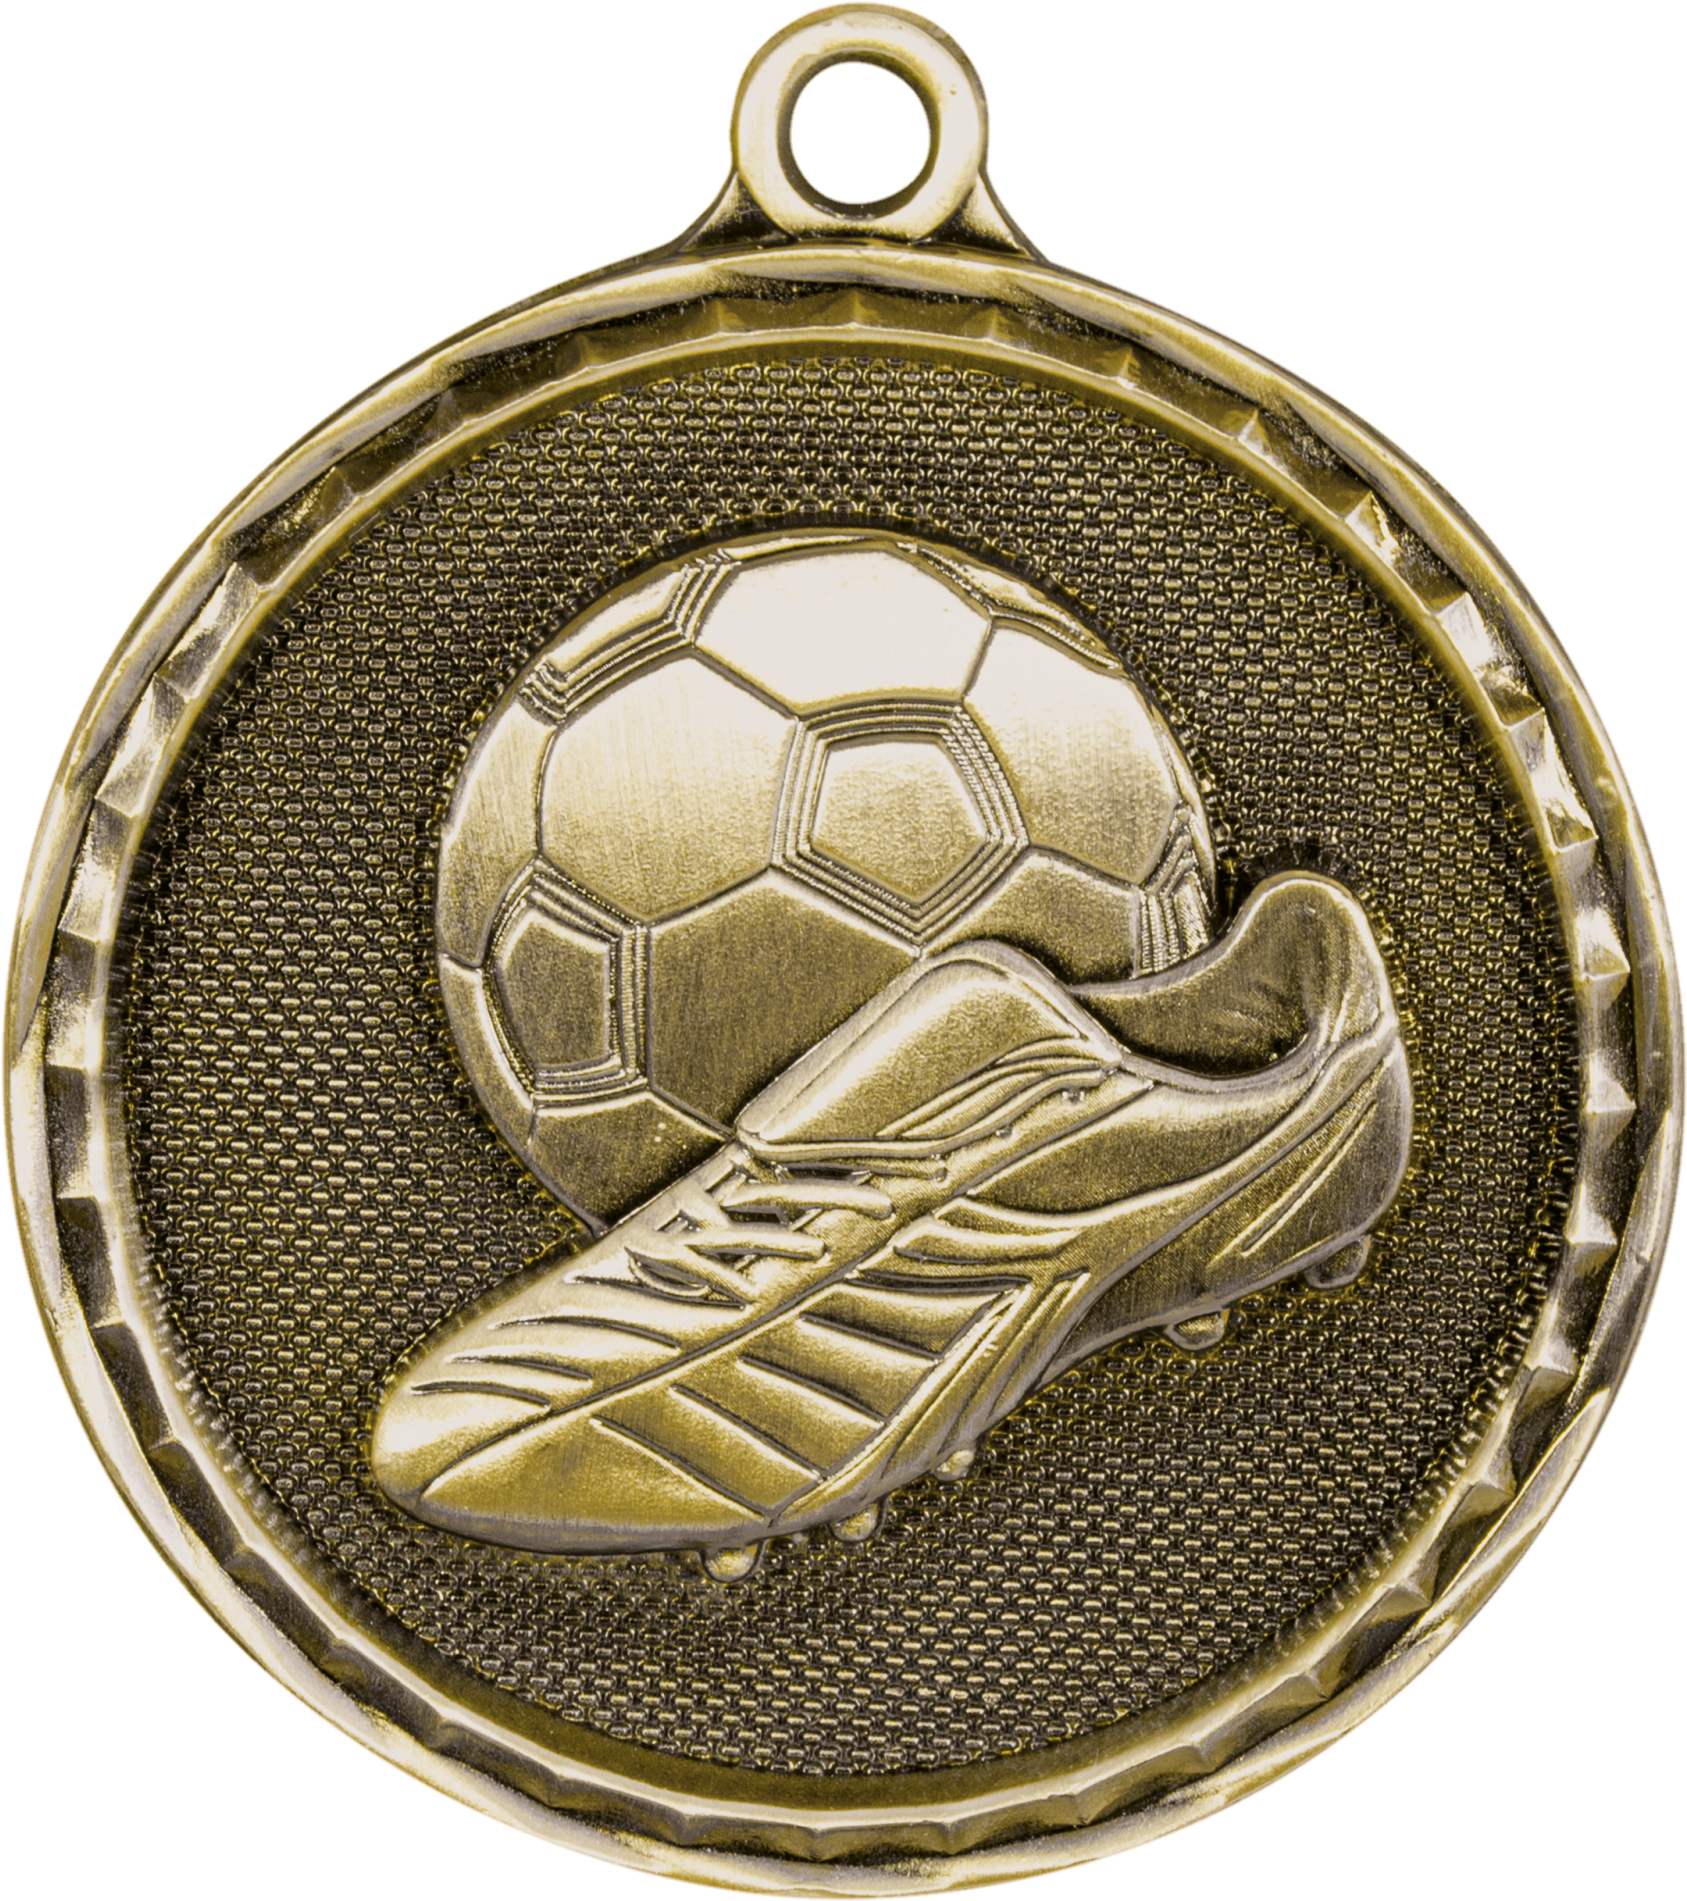  DECHOUS Medallas deportivas de fútbol Medallas de